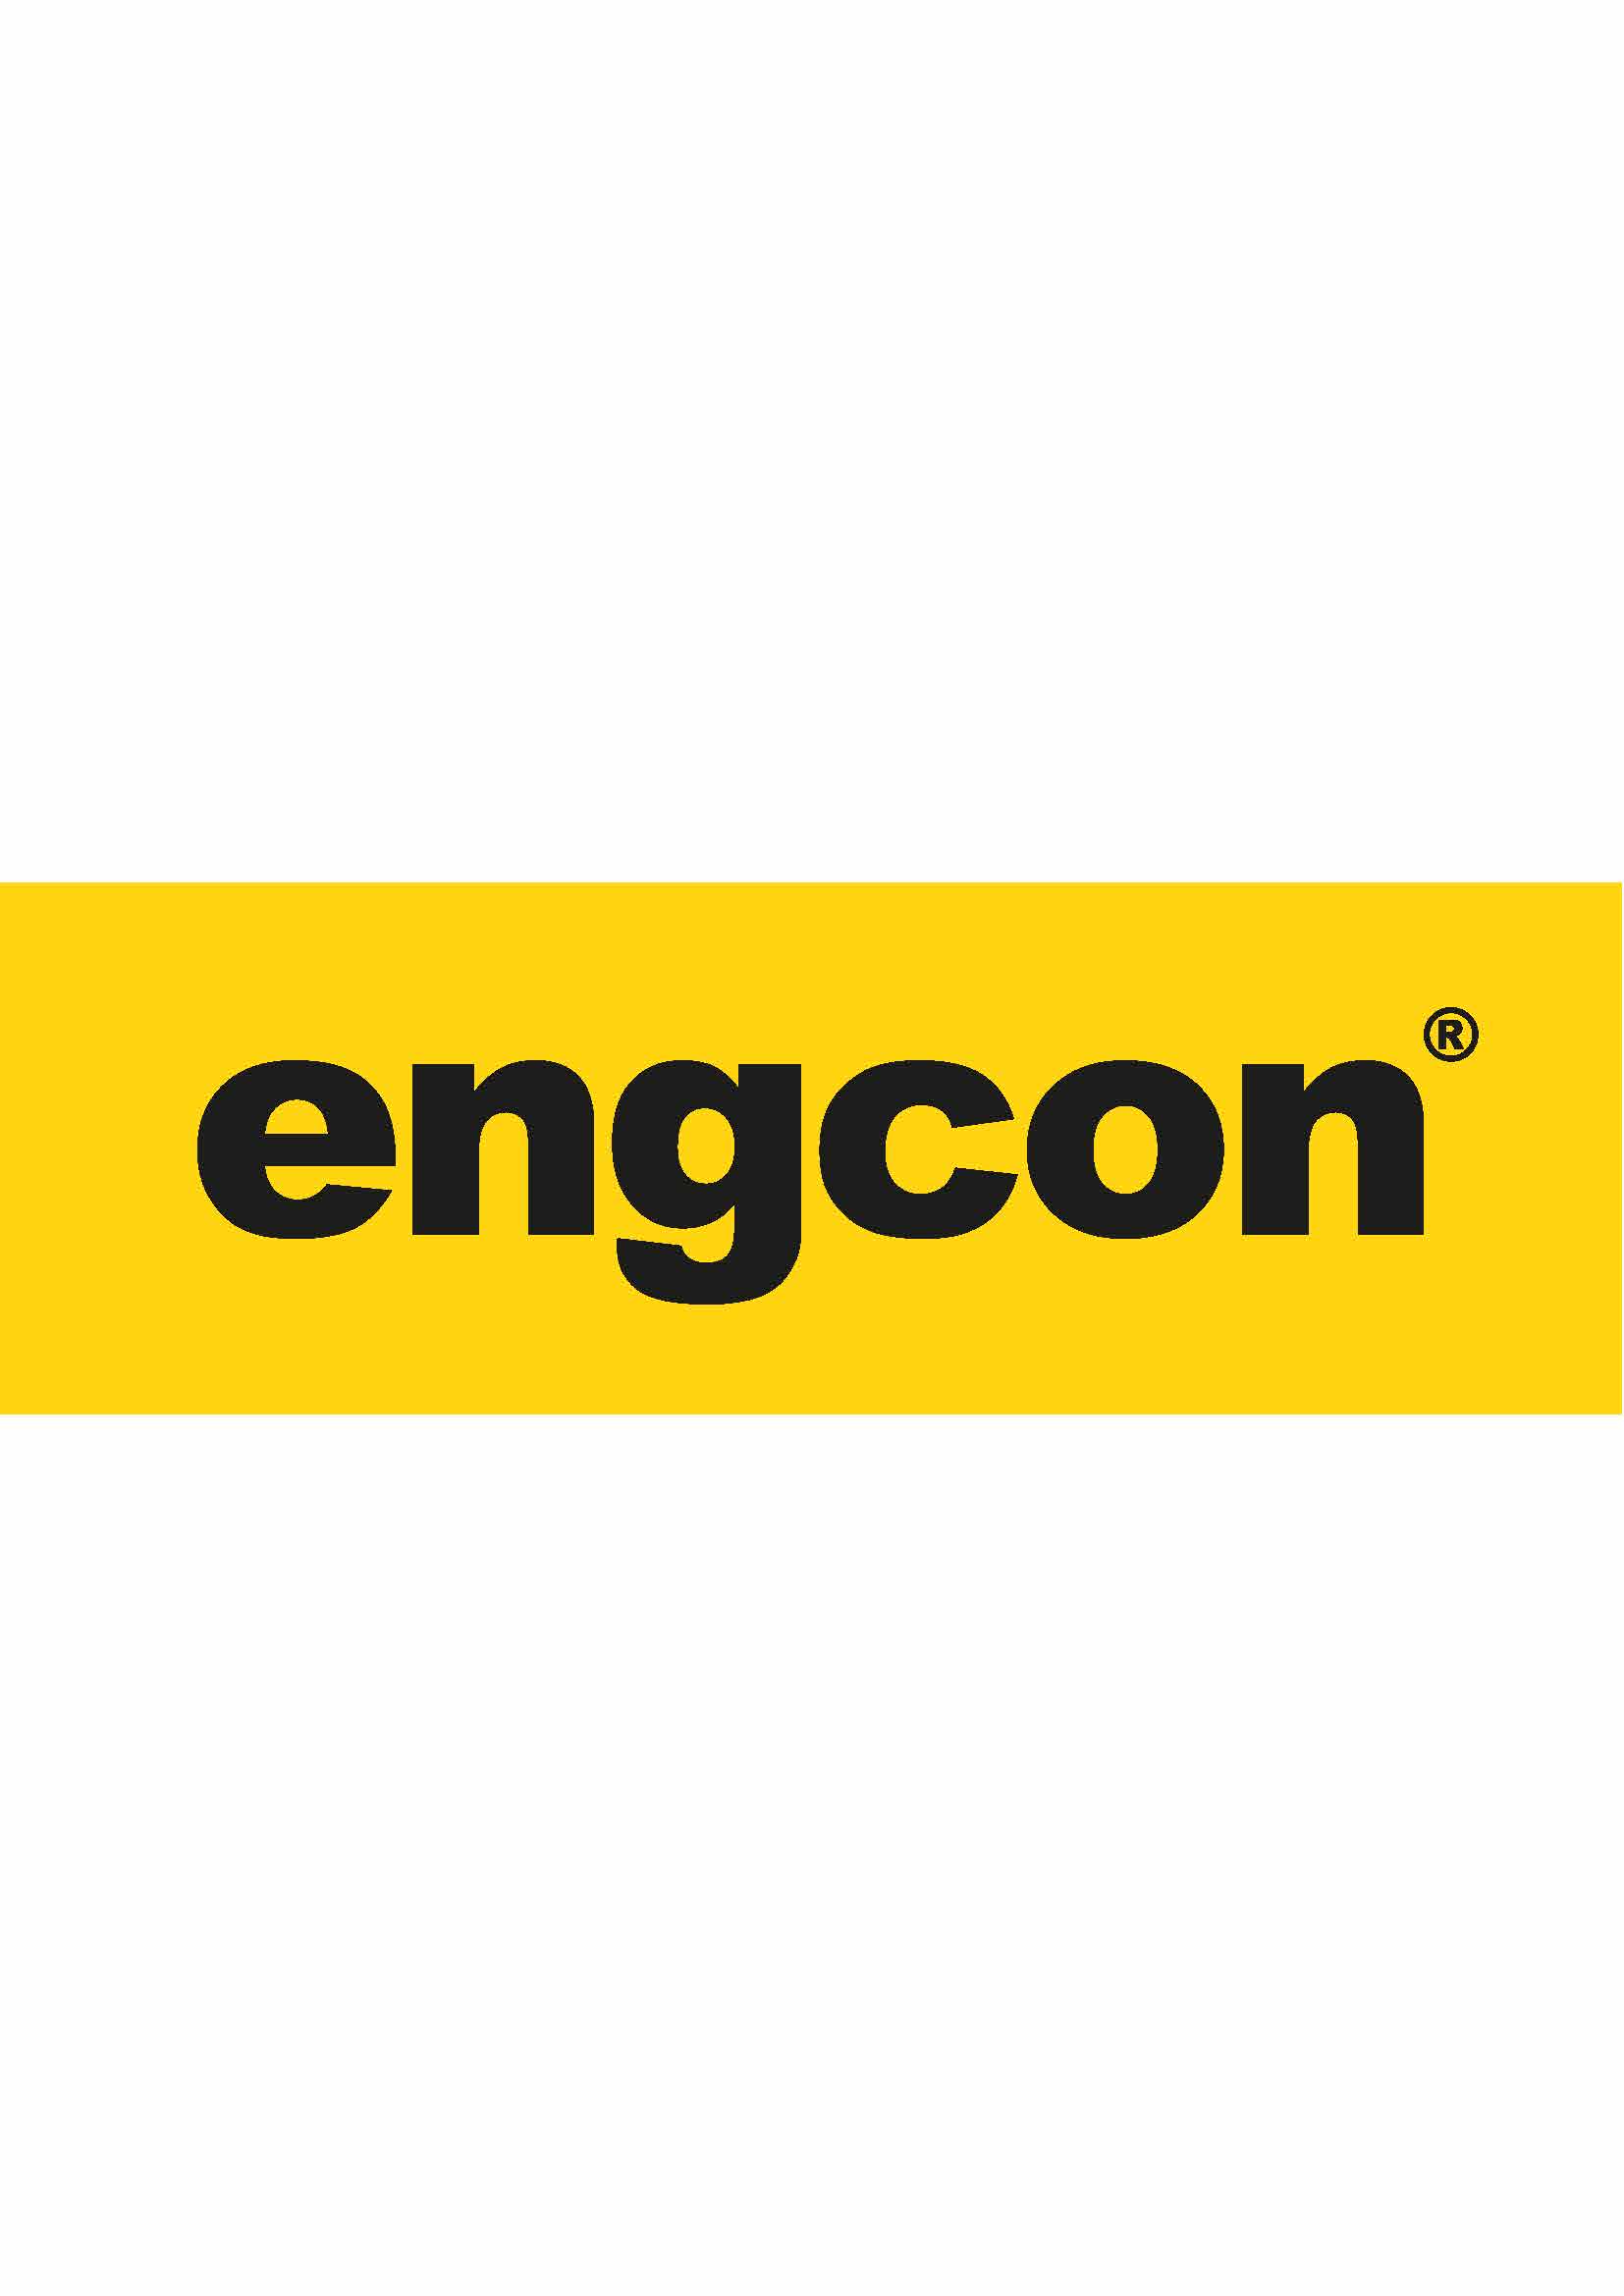 Team Engcon logo